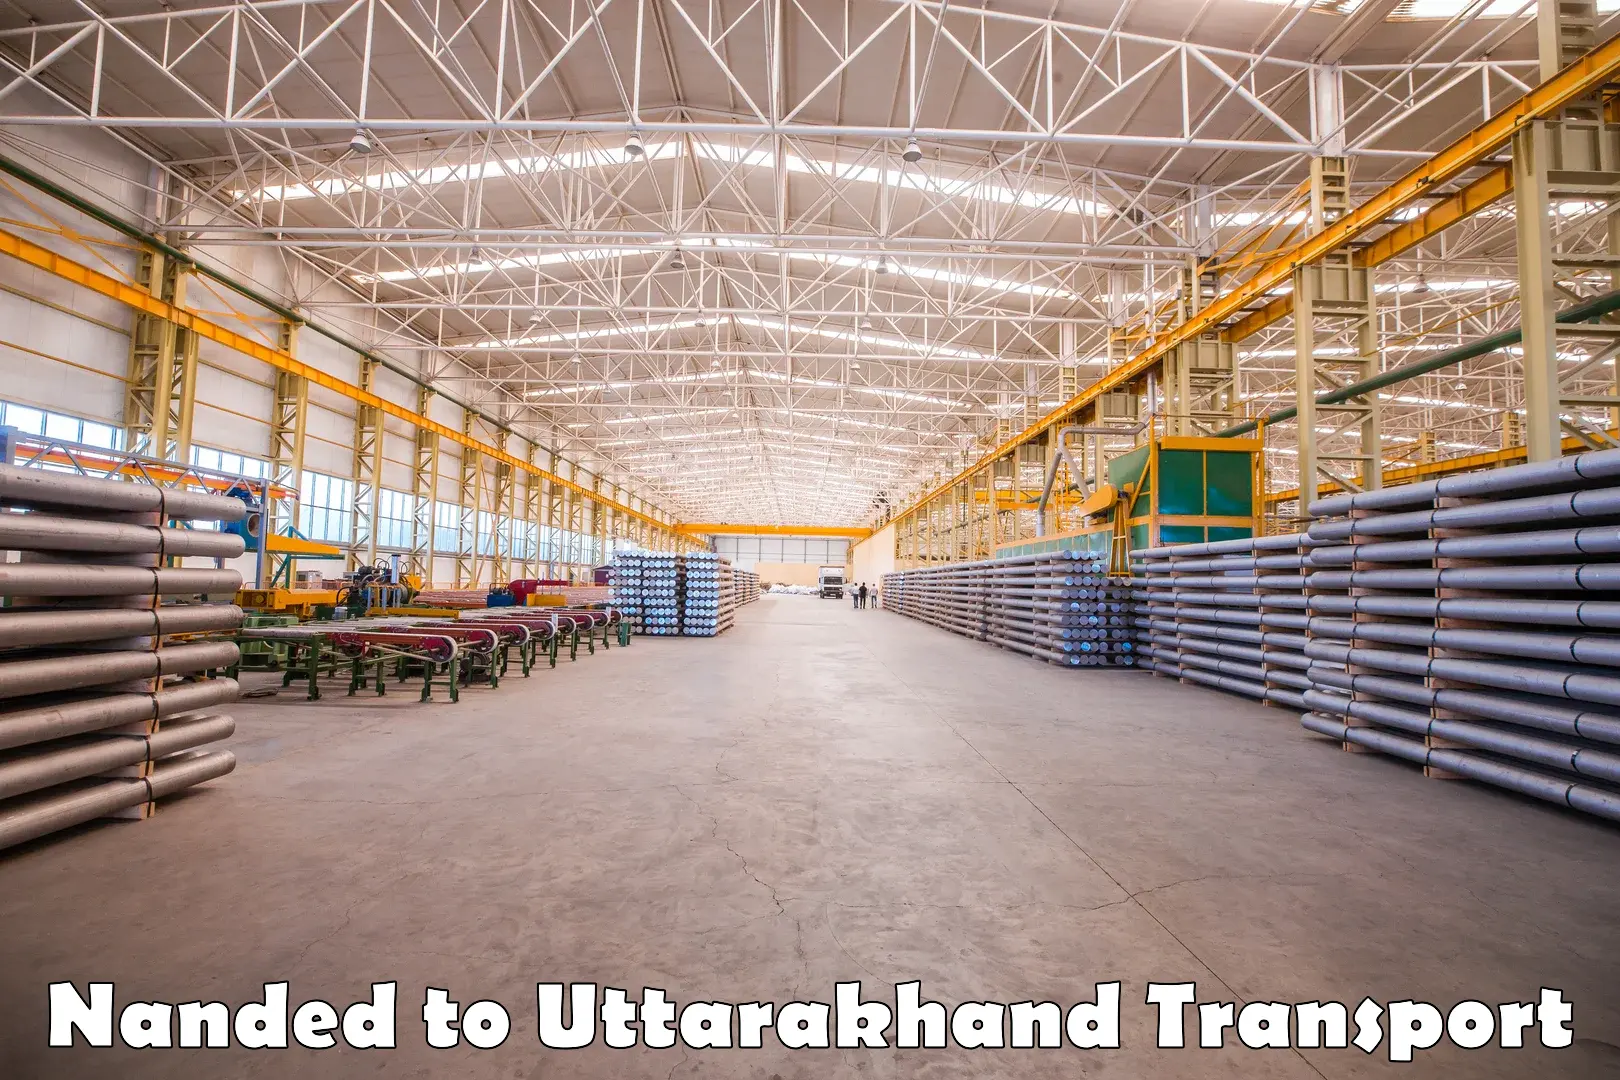 Commercial transport service Nanded to Uttarkashi